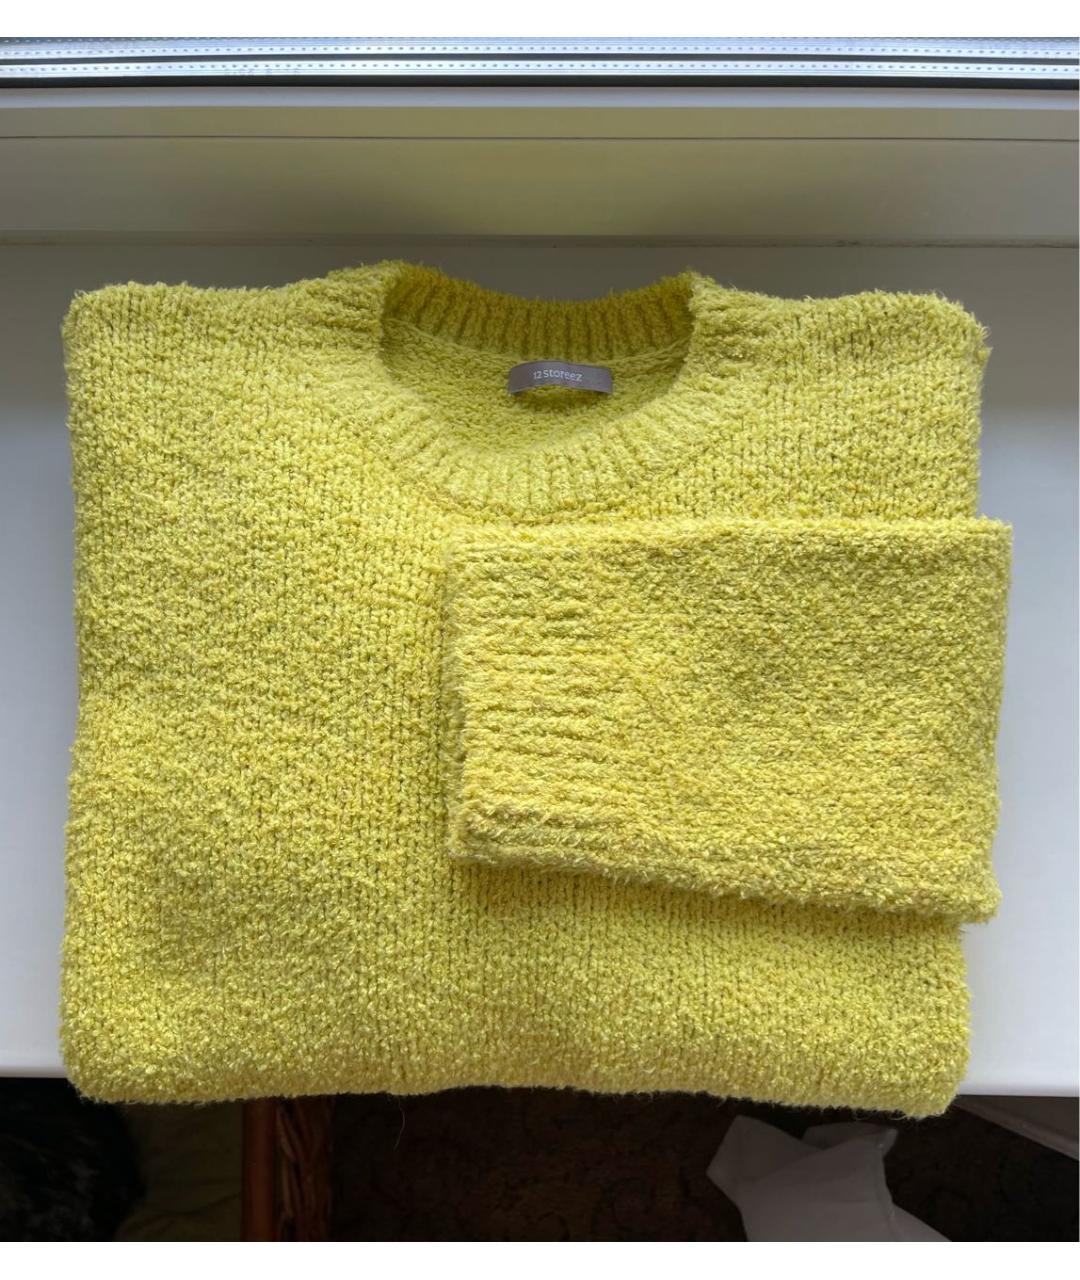 12 STOREEZ Зеленый хлопковый джемпер / свитер, фото 7